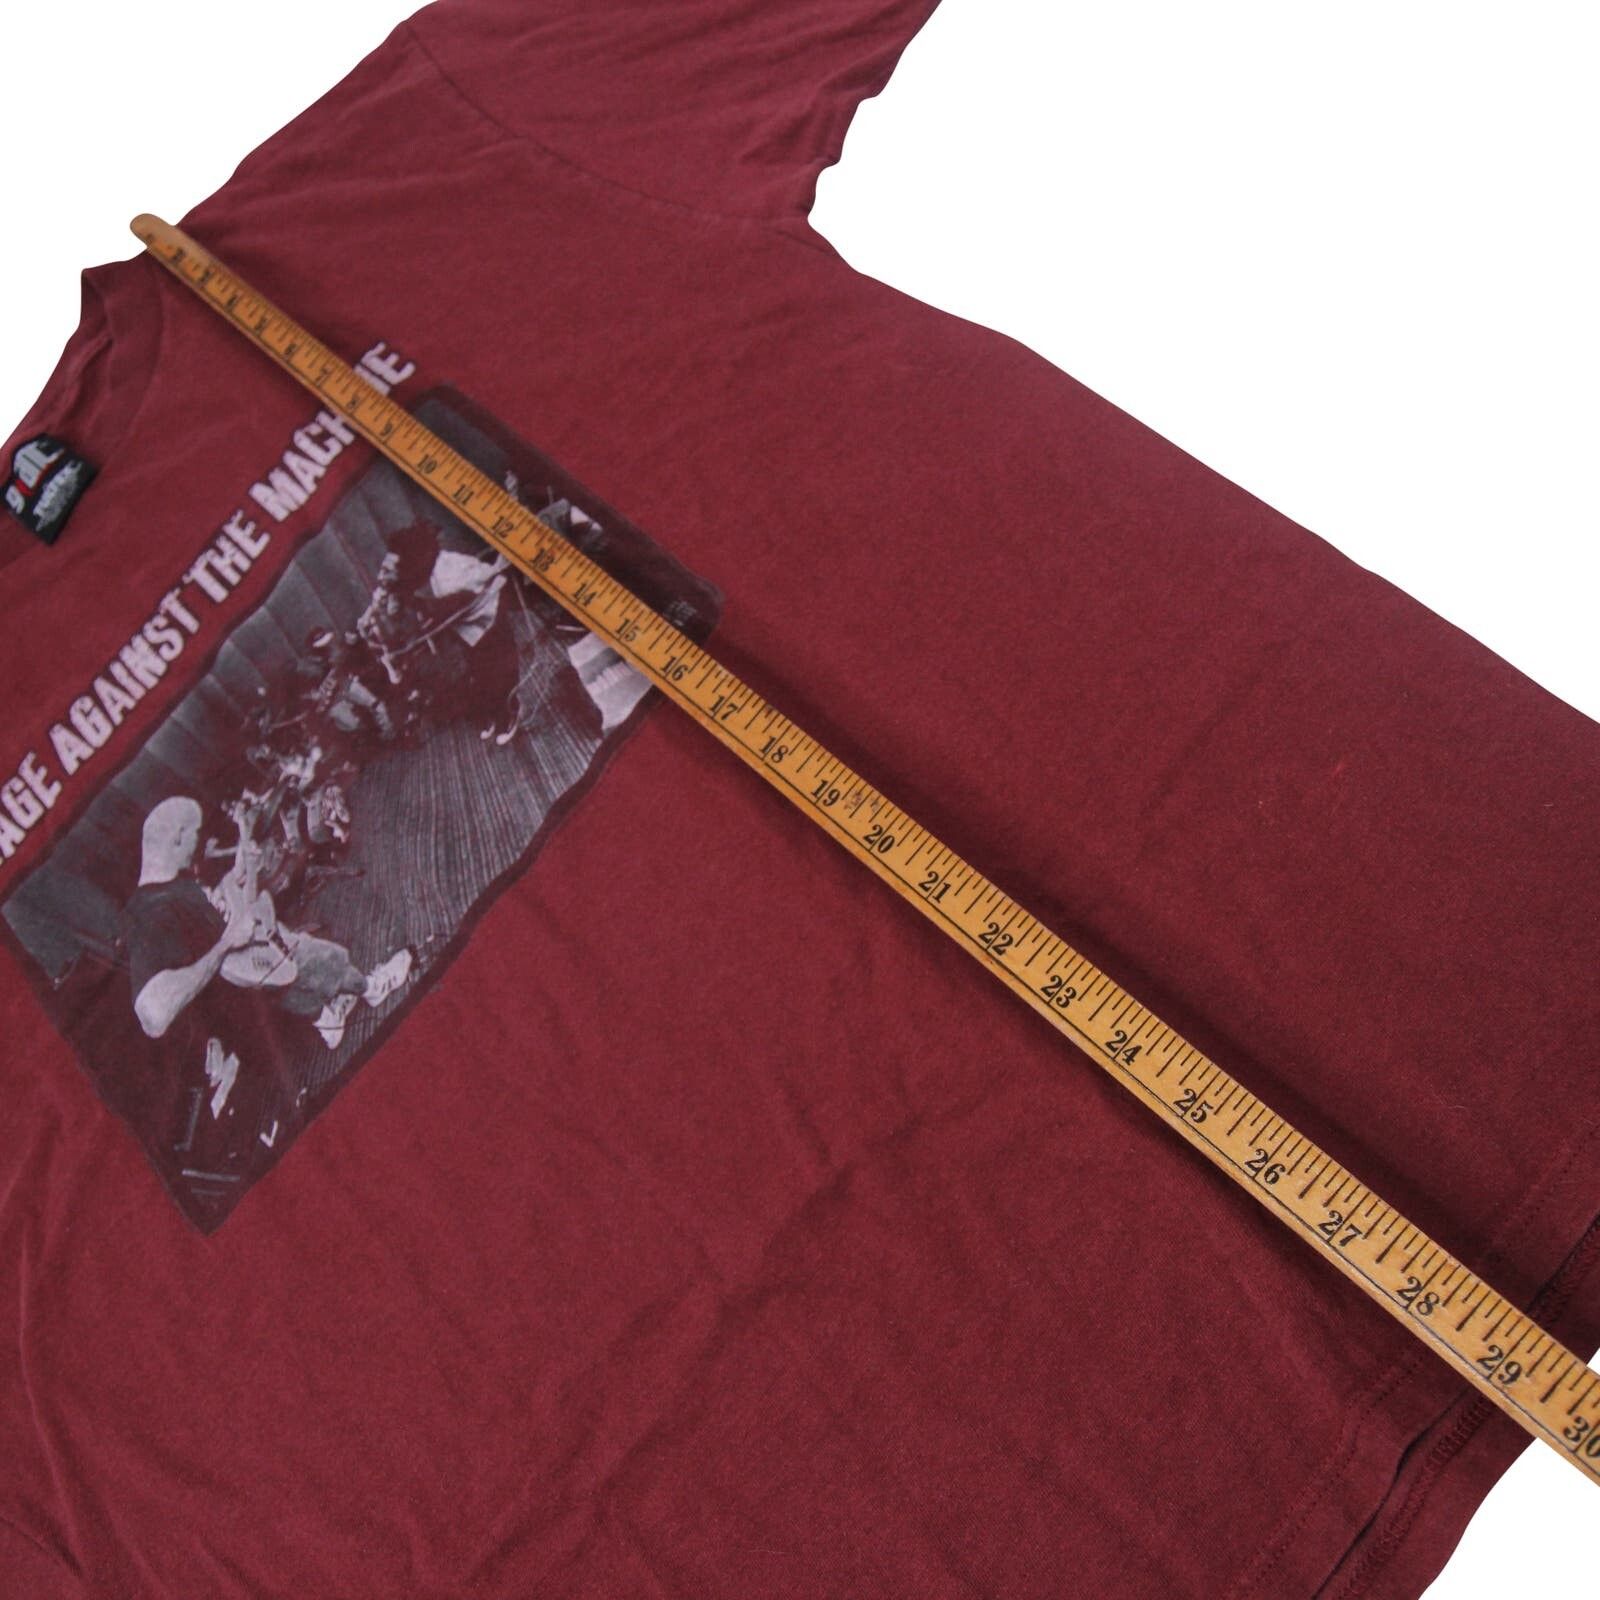 Vintage Vintage 1997 Rage Against the Machine Tour Shirt Size US XL / EU 56 / 4 - 6 Thumbnail